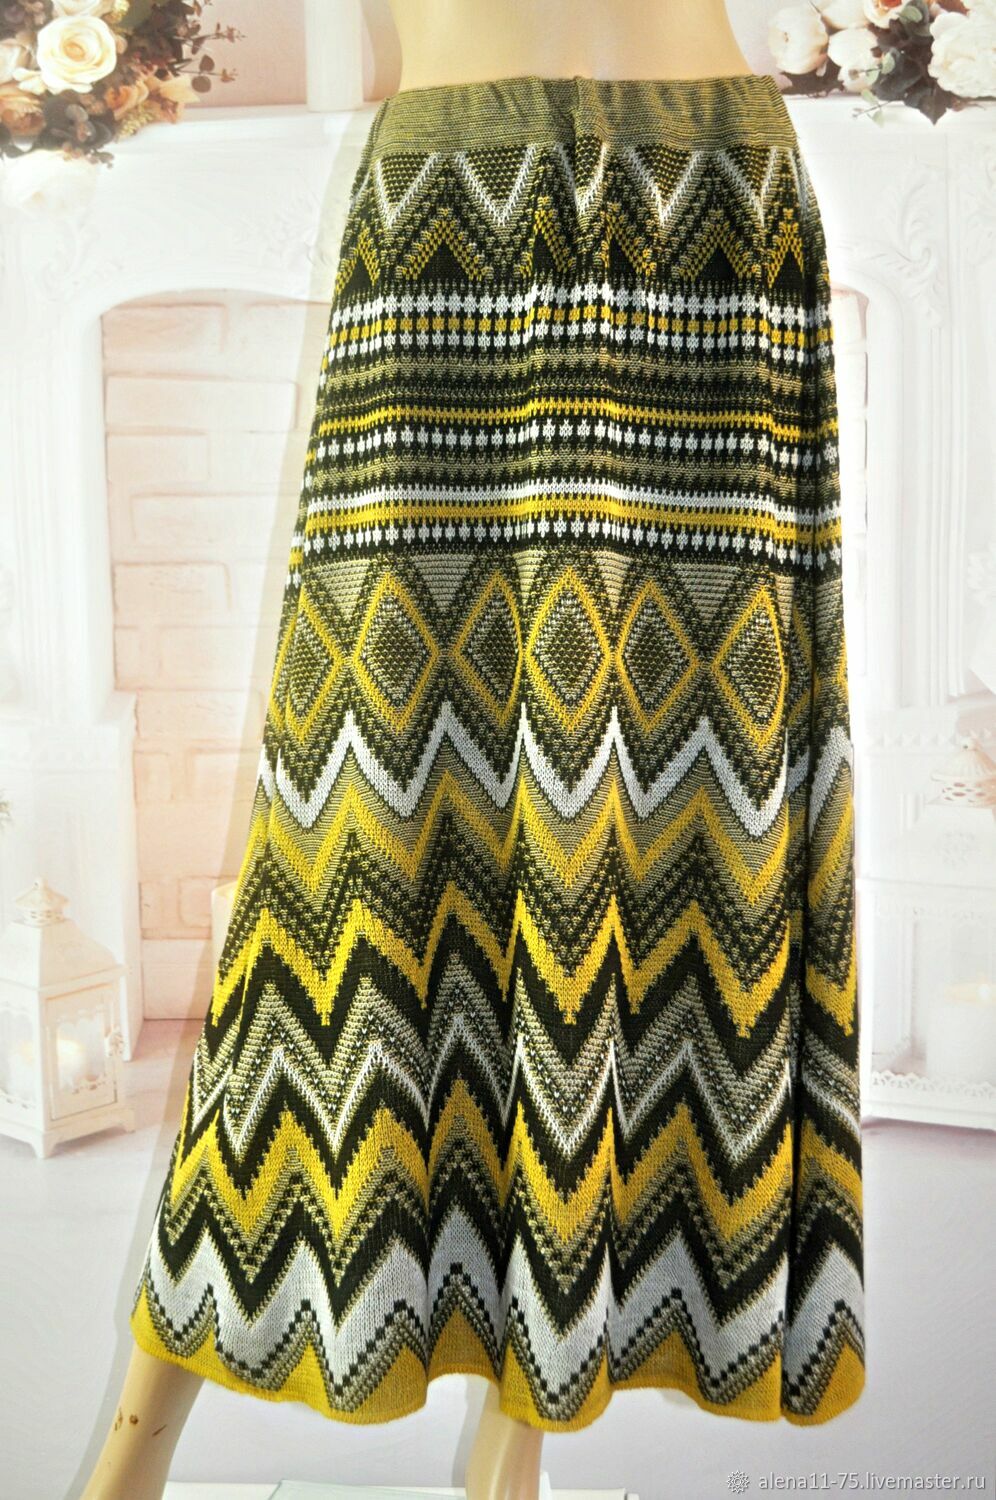 Knitted skirt 'geometry',cotton.46-56 size, Skirts, Gryazi,  Фото №1